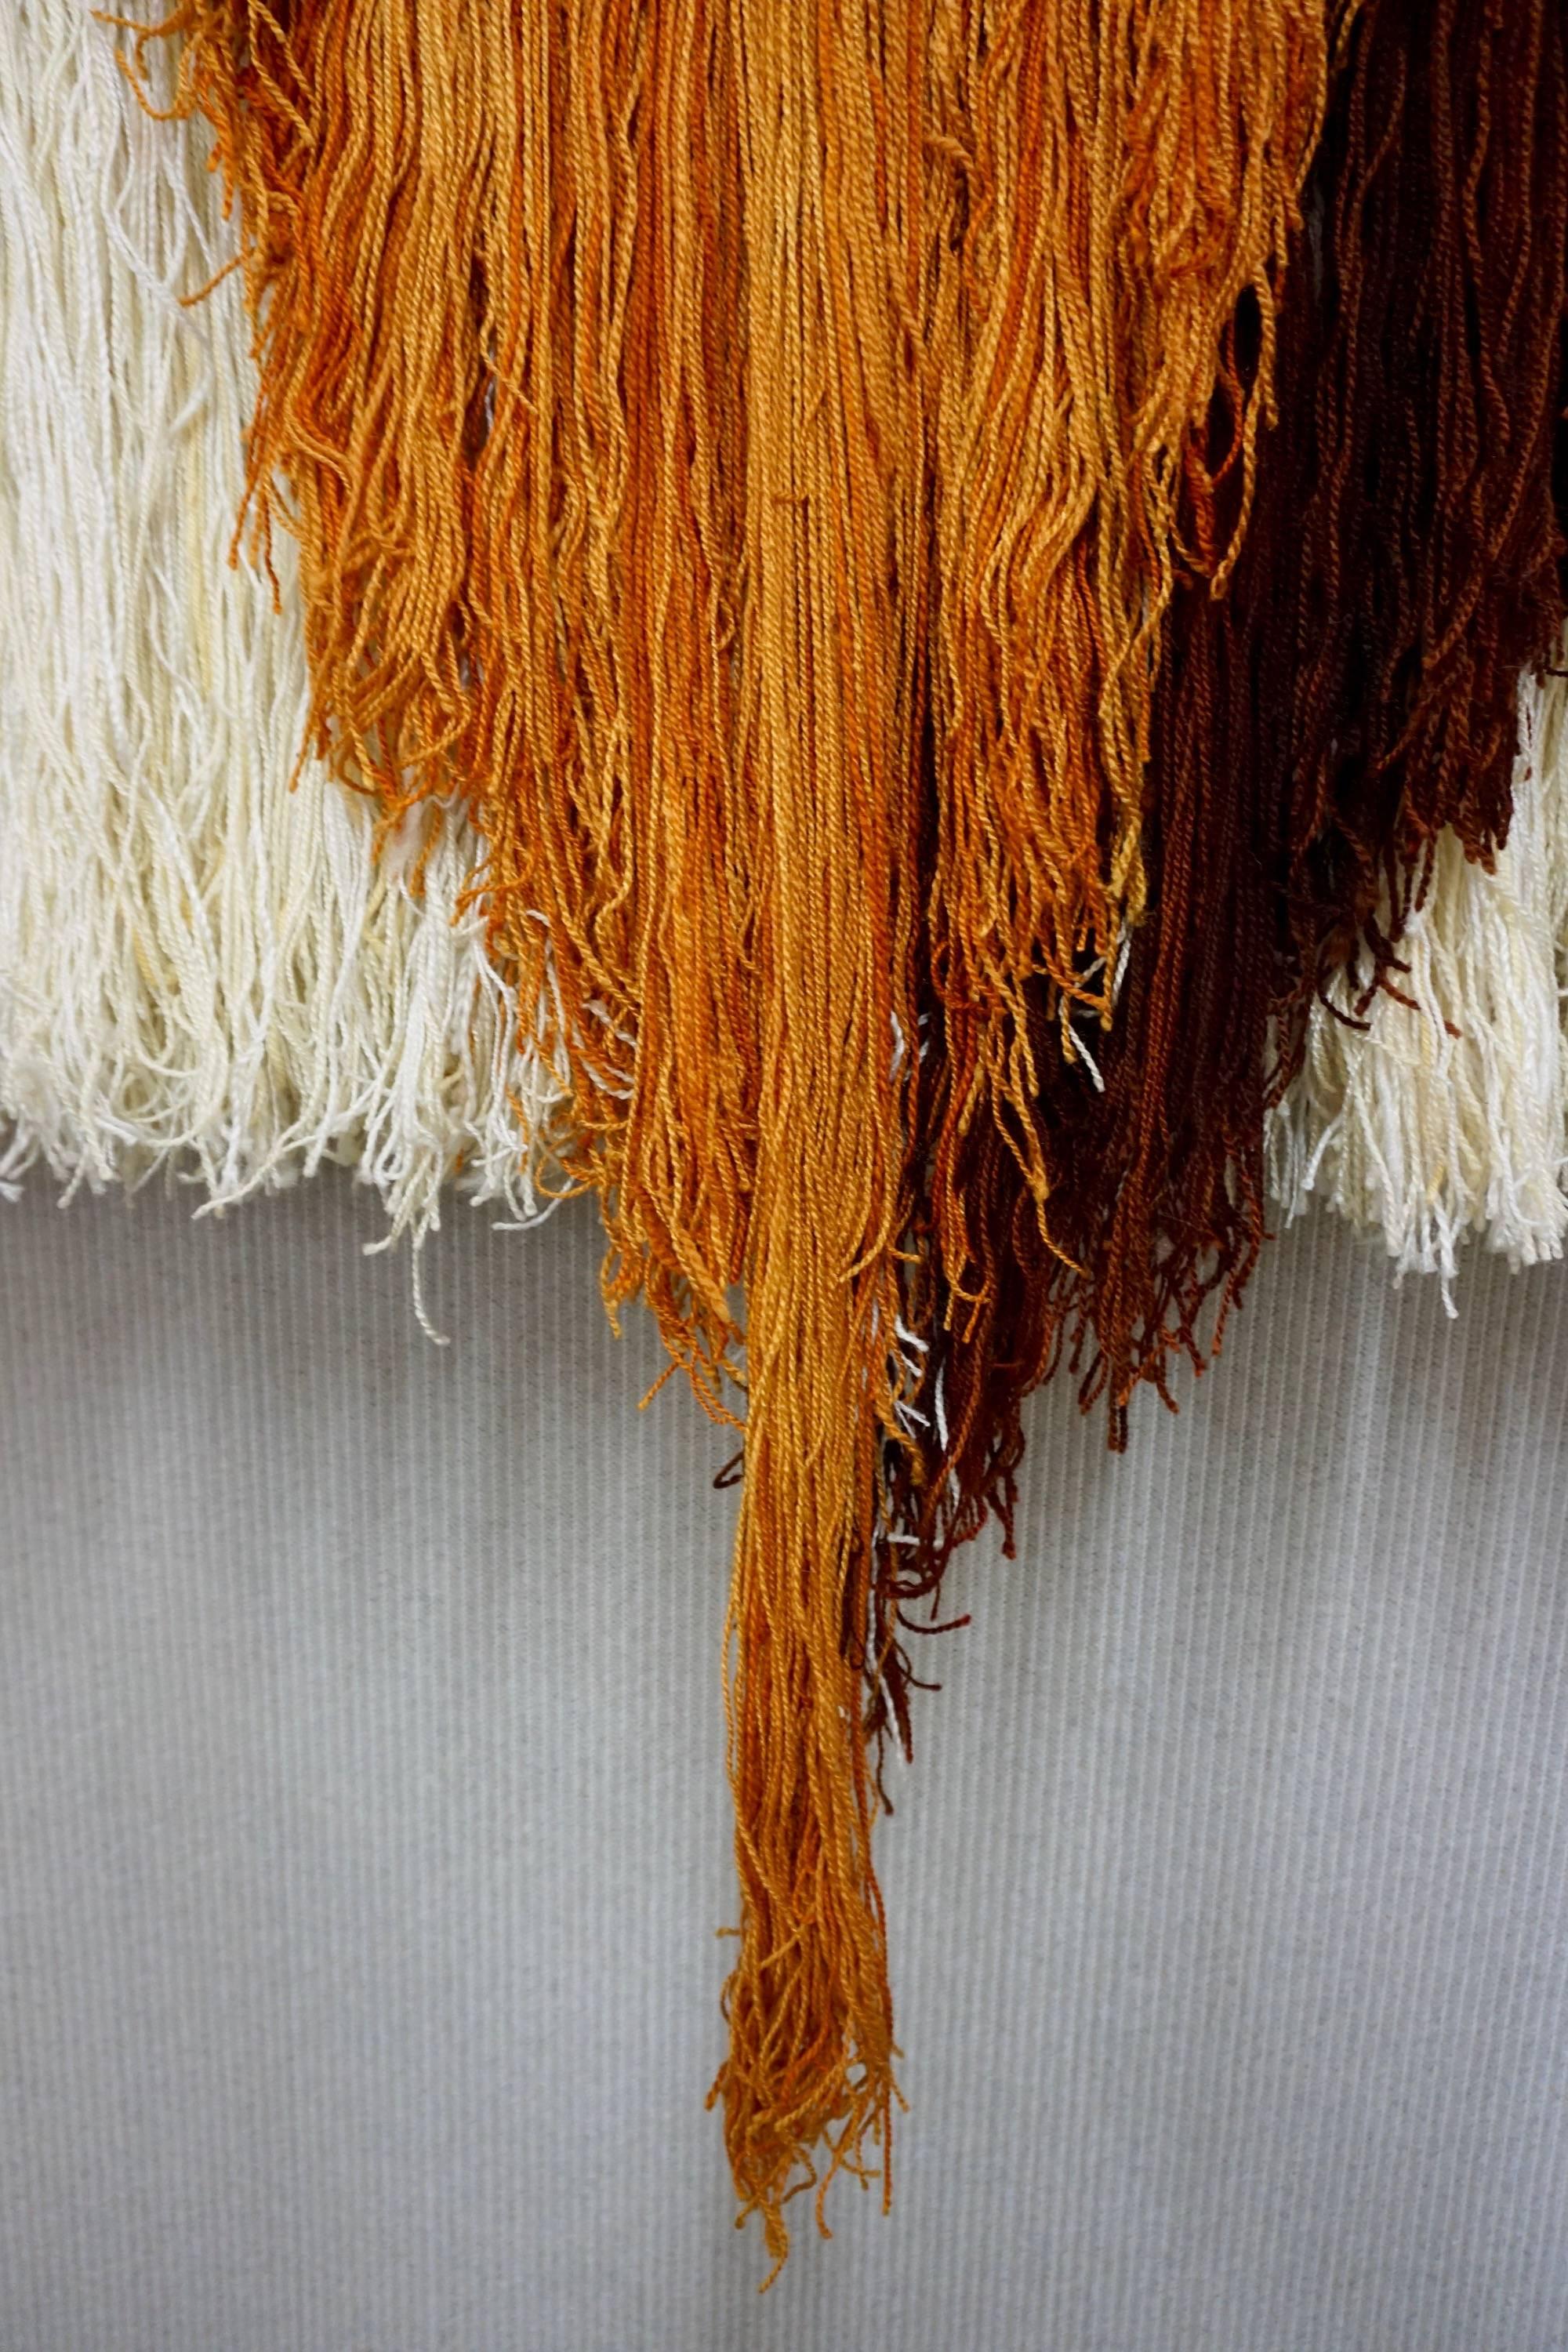 Striking Wool Tapestry 1